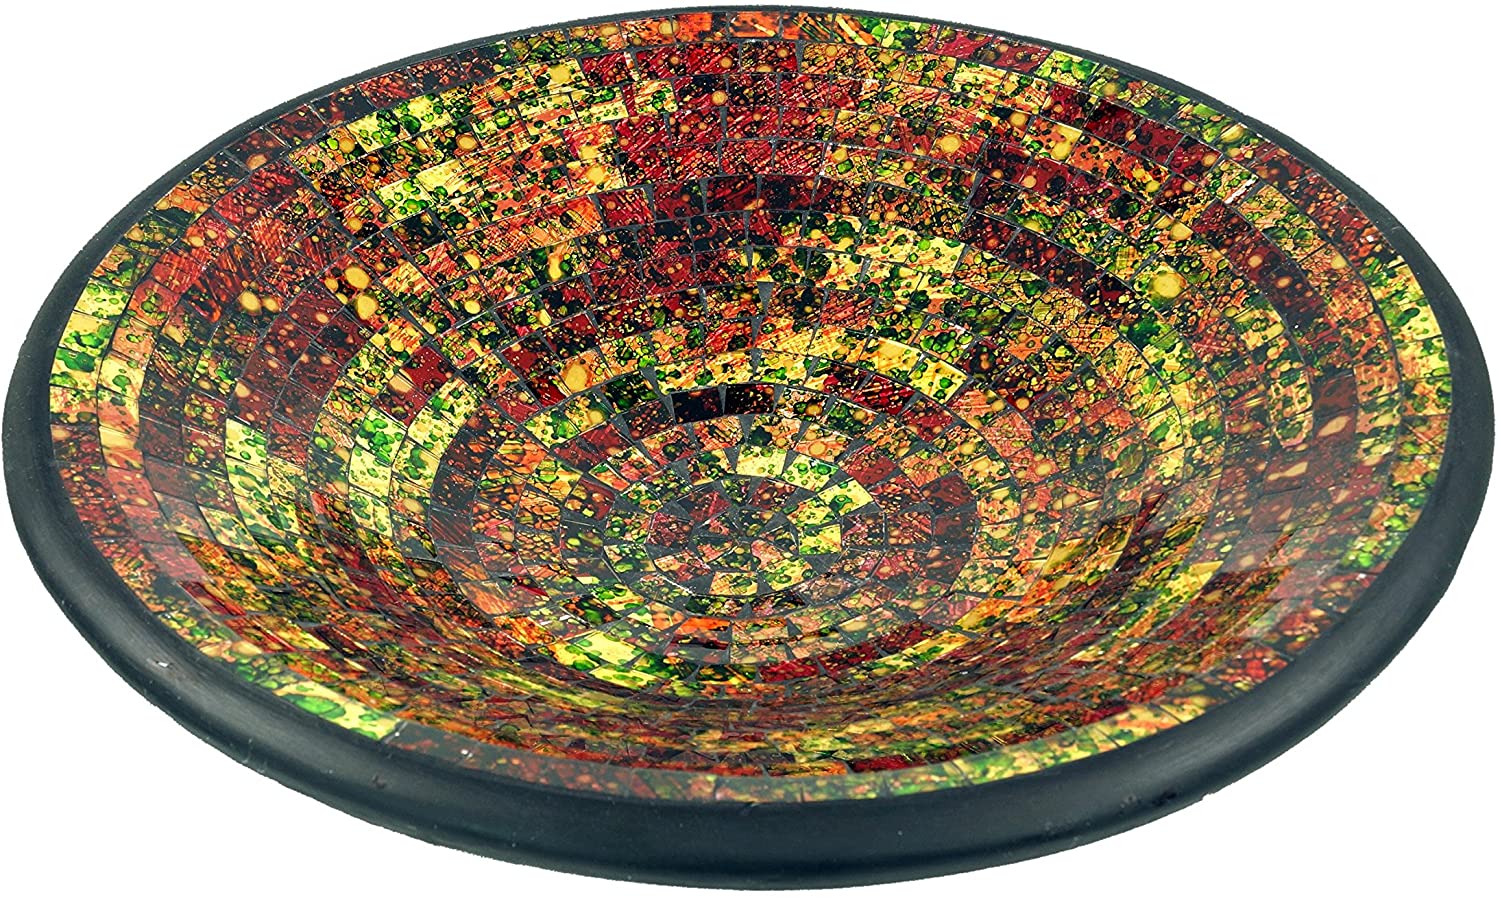 Guru-Shop Round Mosaic Bowl / Coaster - Decorative Bowl - Handmade Ceramic & Glass Fruit Bowls